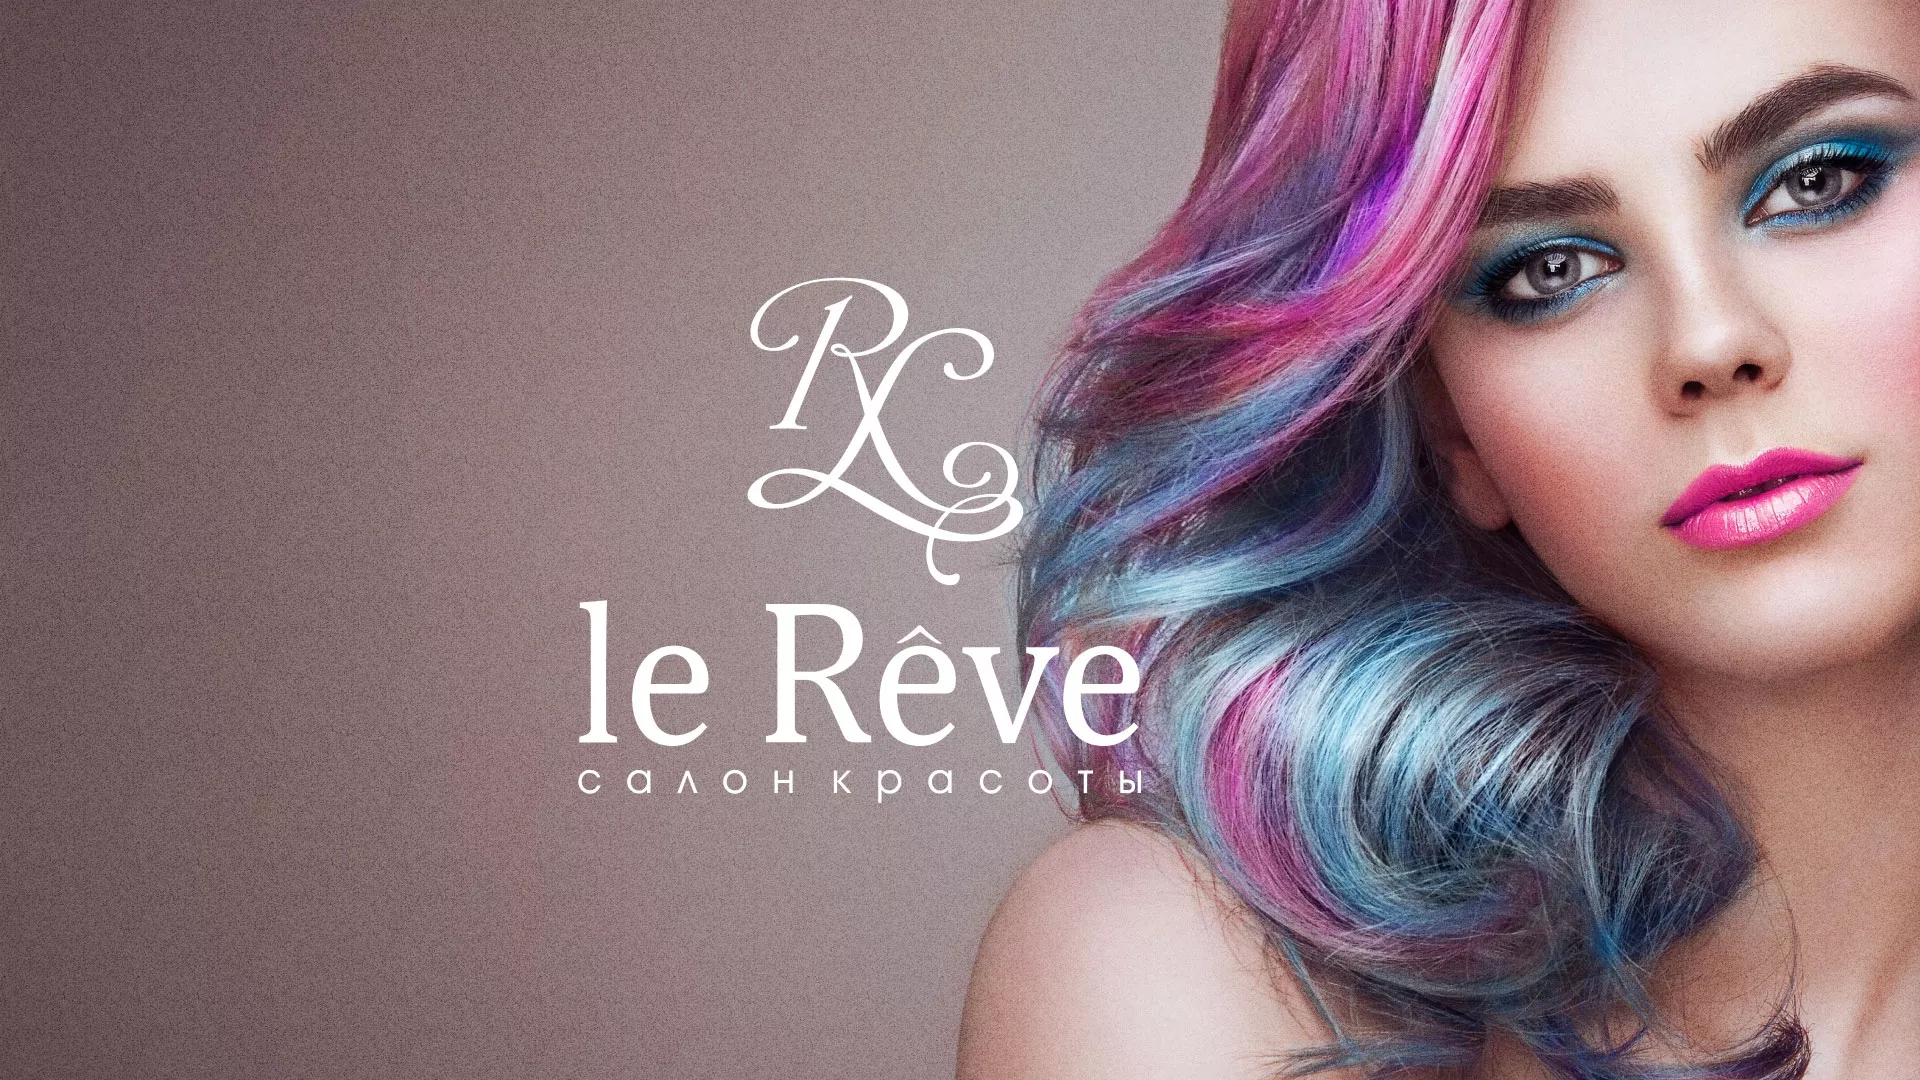 Создание сайта для салона красоты «Le Reve» в Володарске